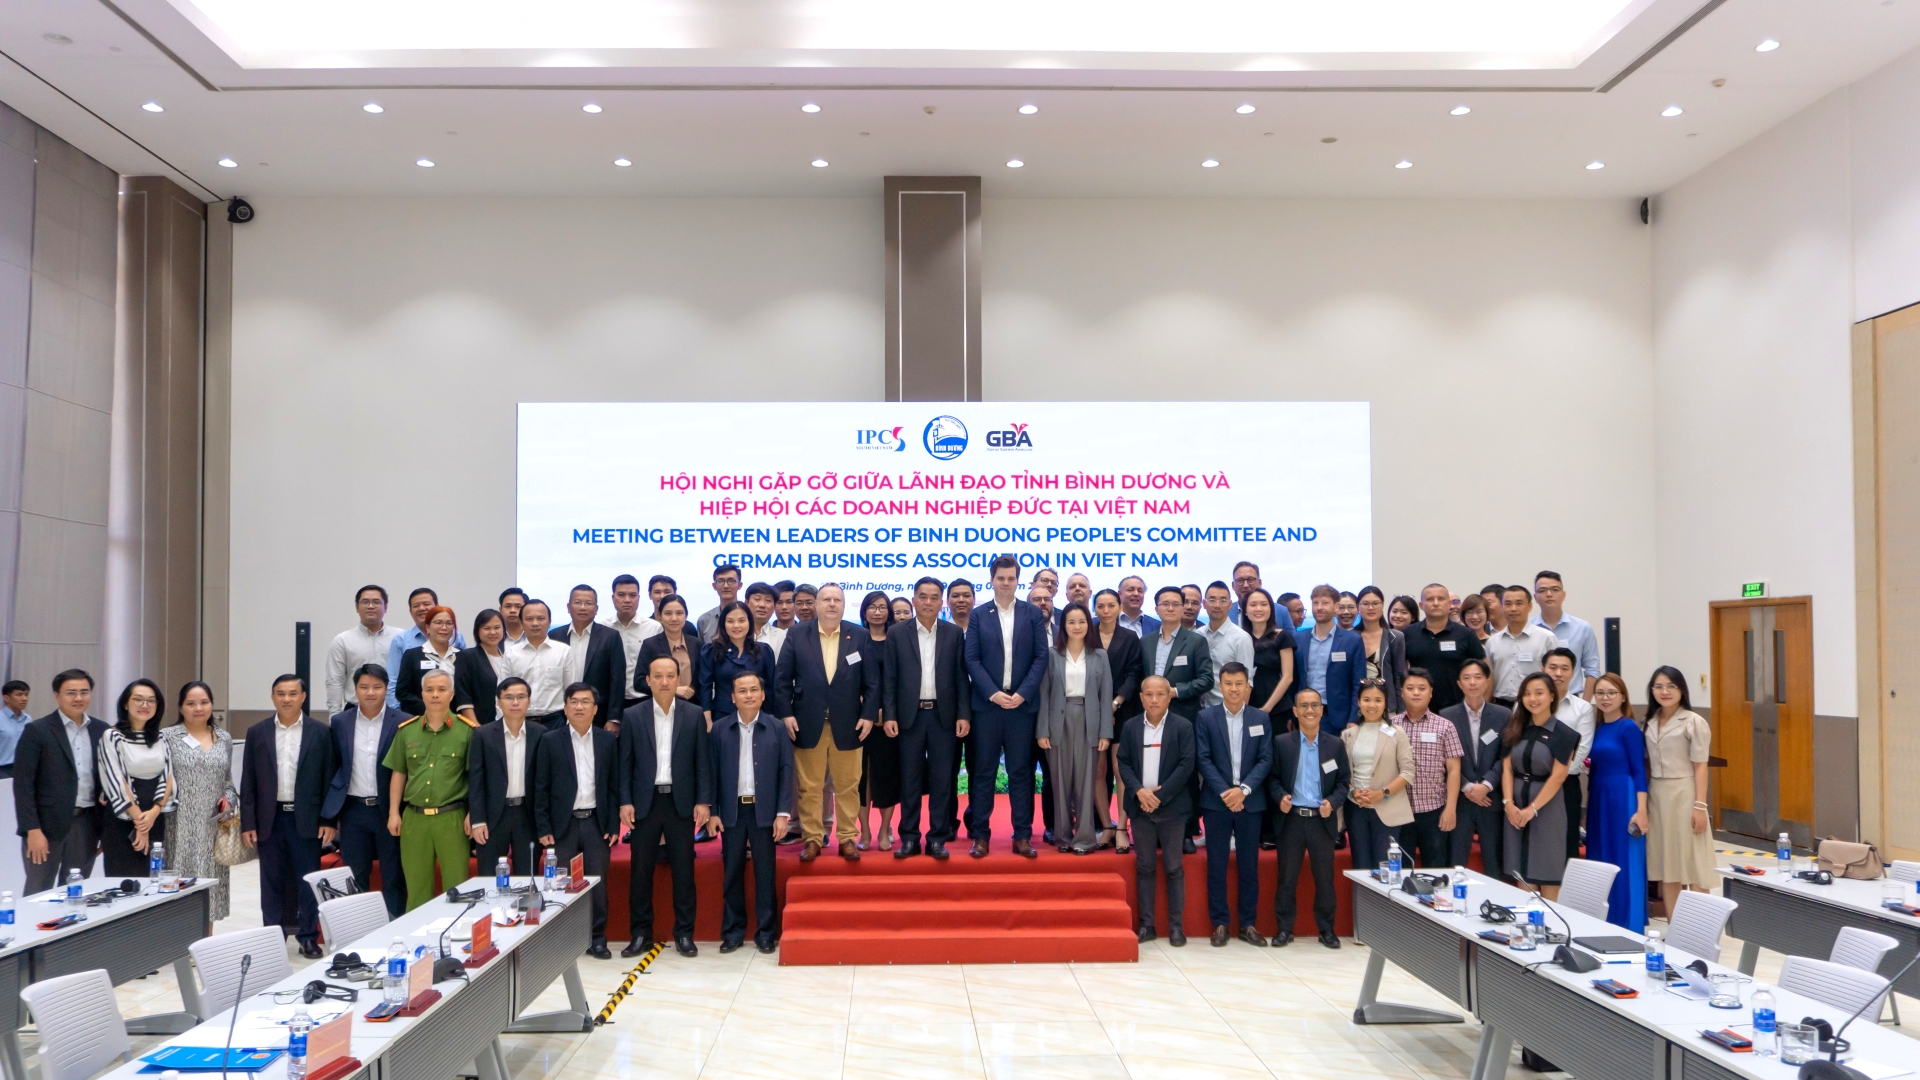 Hiệp hội doanh nghiệp Đức tại Việt Nam (GBA) công bố chiến lược năm 2024, mở rộng hoạt động tại miền Bắc - Ảnh 3.